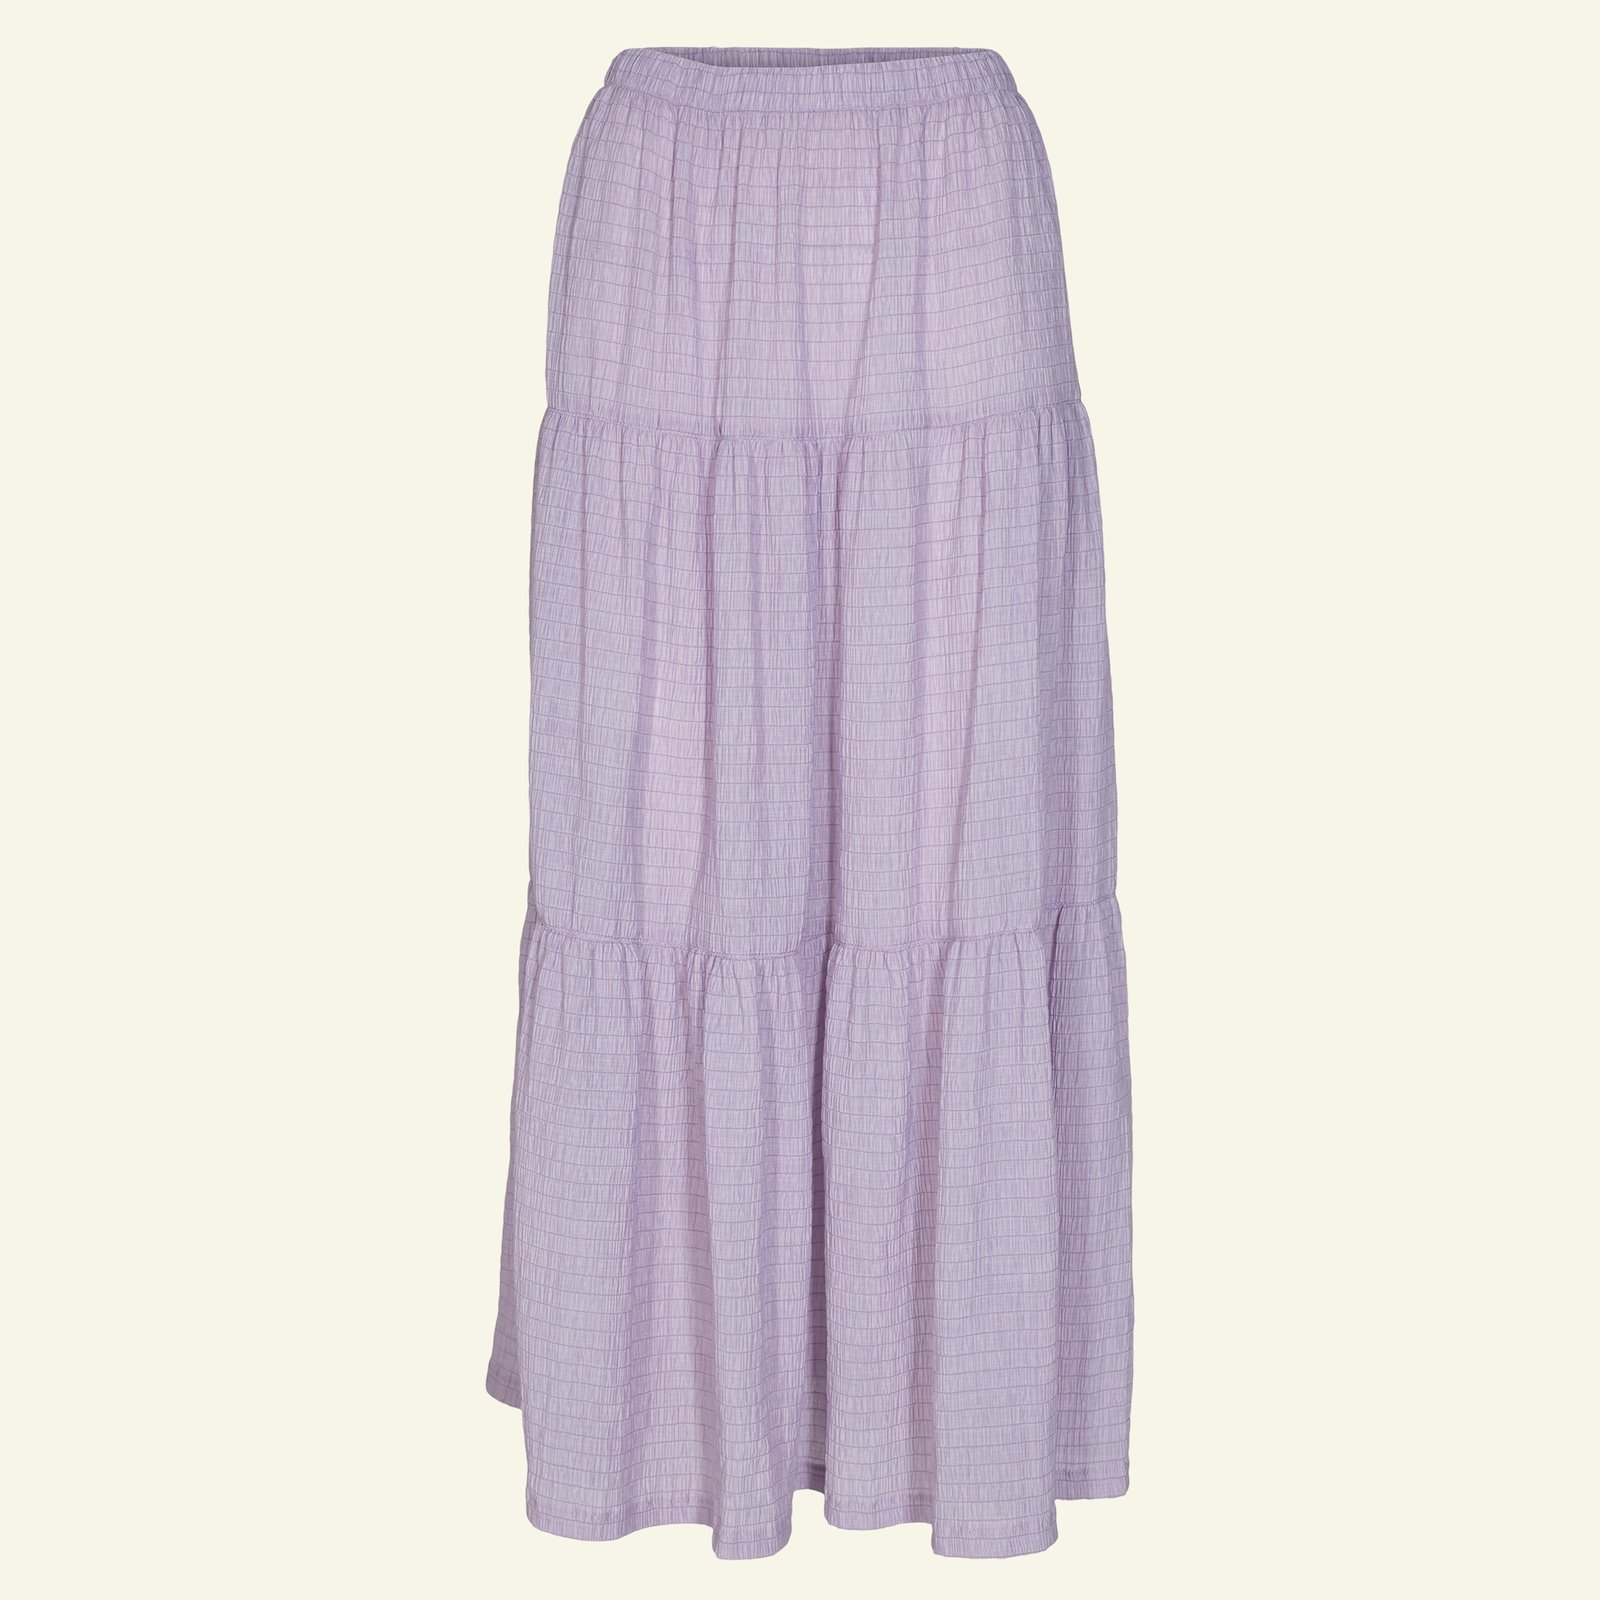 Split level skirt, S p21046_560260_sskit